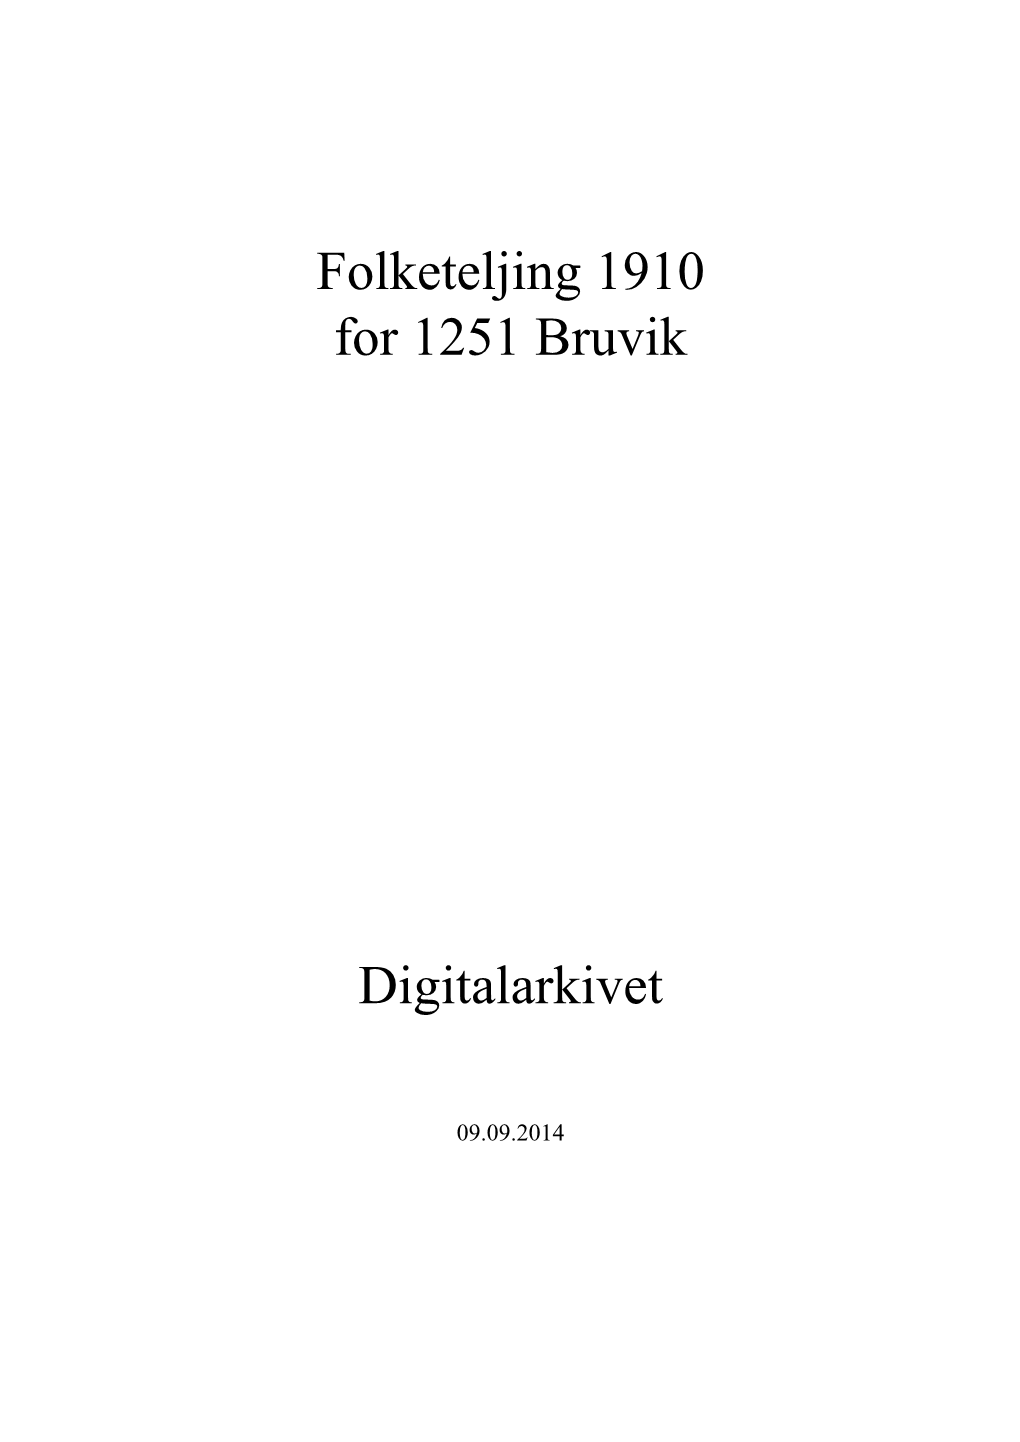 Folketeljing 1910 for 1251 Bruvik Digitalarkivet